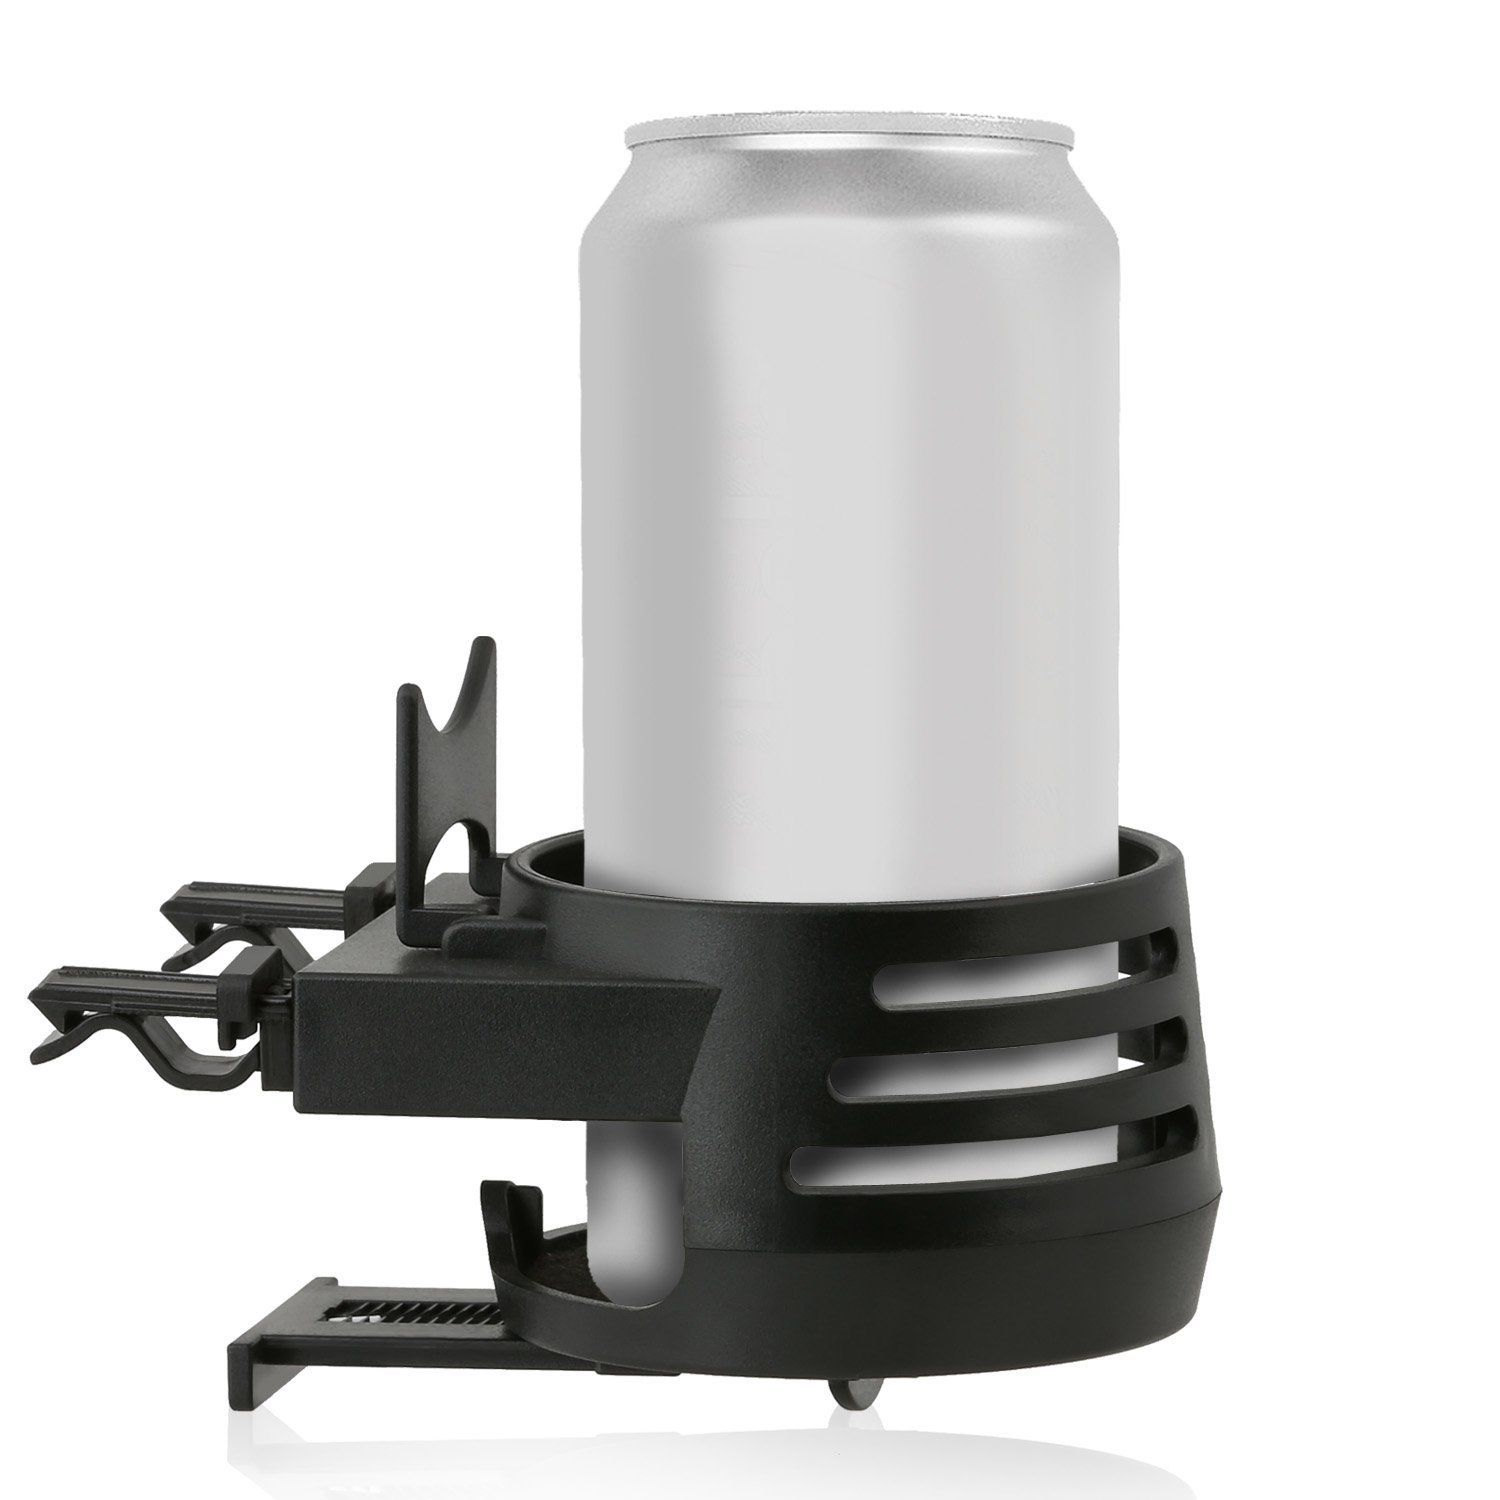 WICKED CHILI 2x I KFZ Auto Getränkehalter Halterung mit Lüftungsschlitz, Lüftung für Becherhalter I schwarz Flaschenhalter, Durchmesser Dosenhalter 5,3-7cm